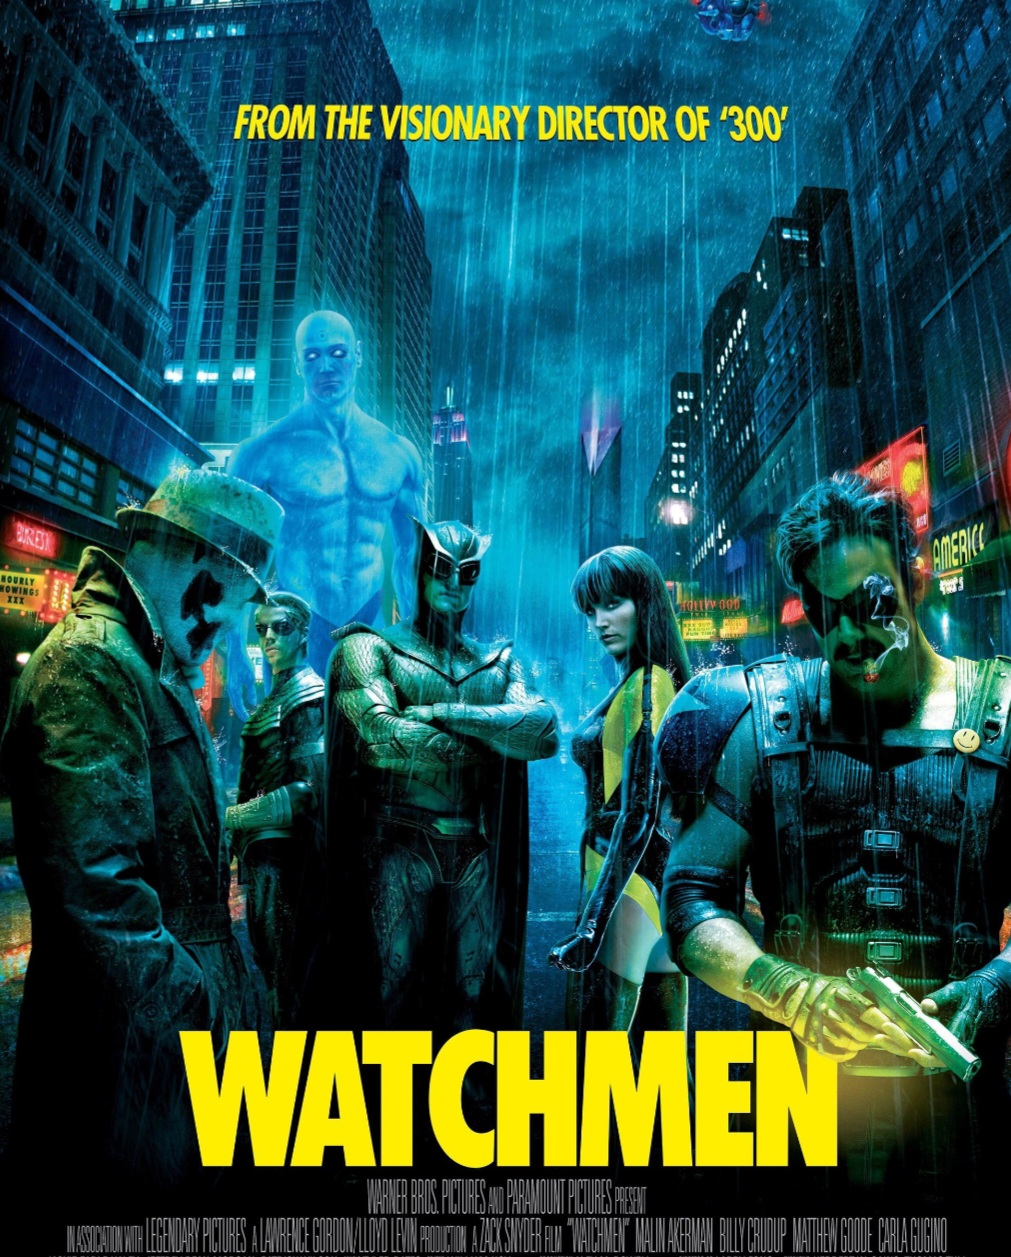 ดูหนังออนไลน์ฟรี Watchmen ศึกซูเปอร์ฮีโร่พันธุ์มหากาฬ 2009 พากย์ไทย